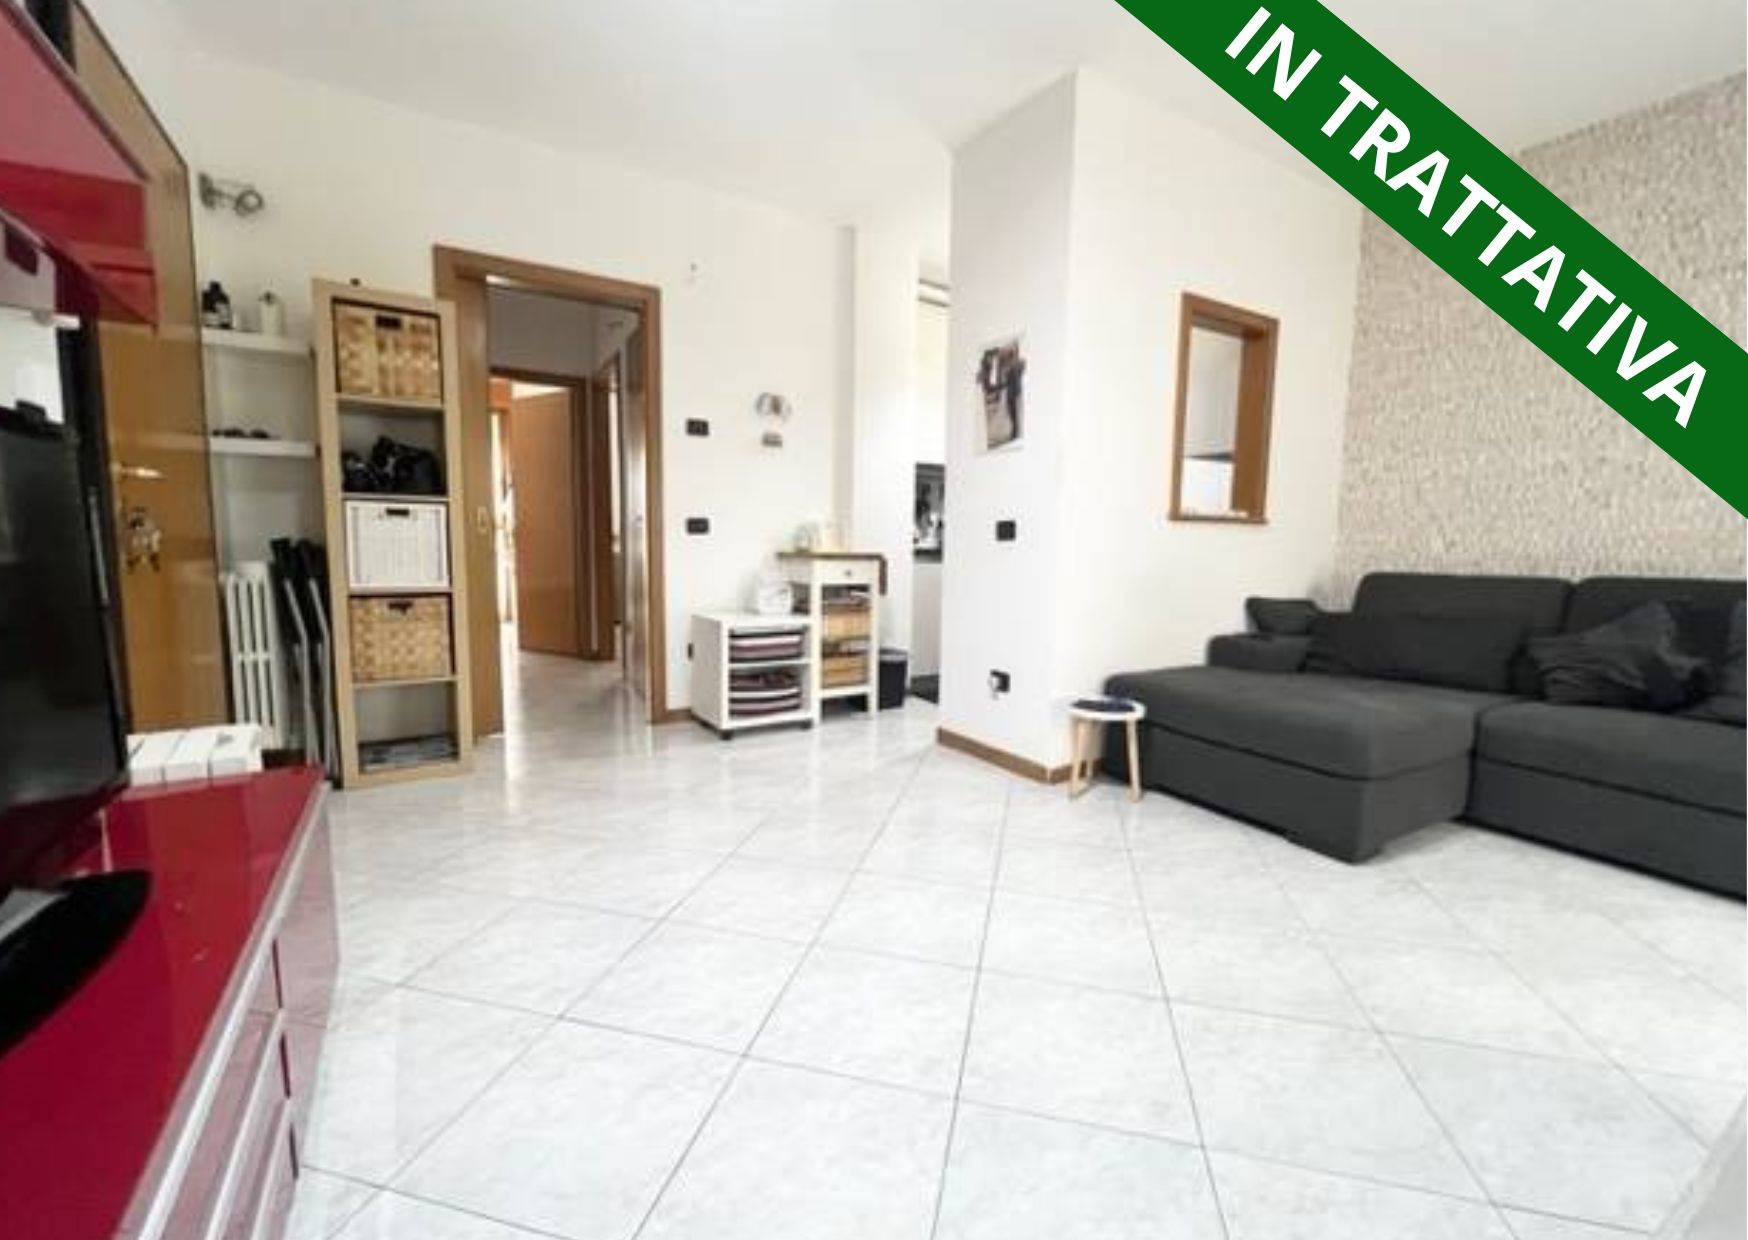 Appartamento in vendita a Canonica d'Adda, 2 locali, prezzo € 113.000 | PortaleAgenzieImmobiliari.it